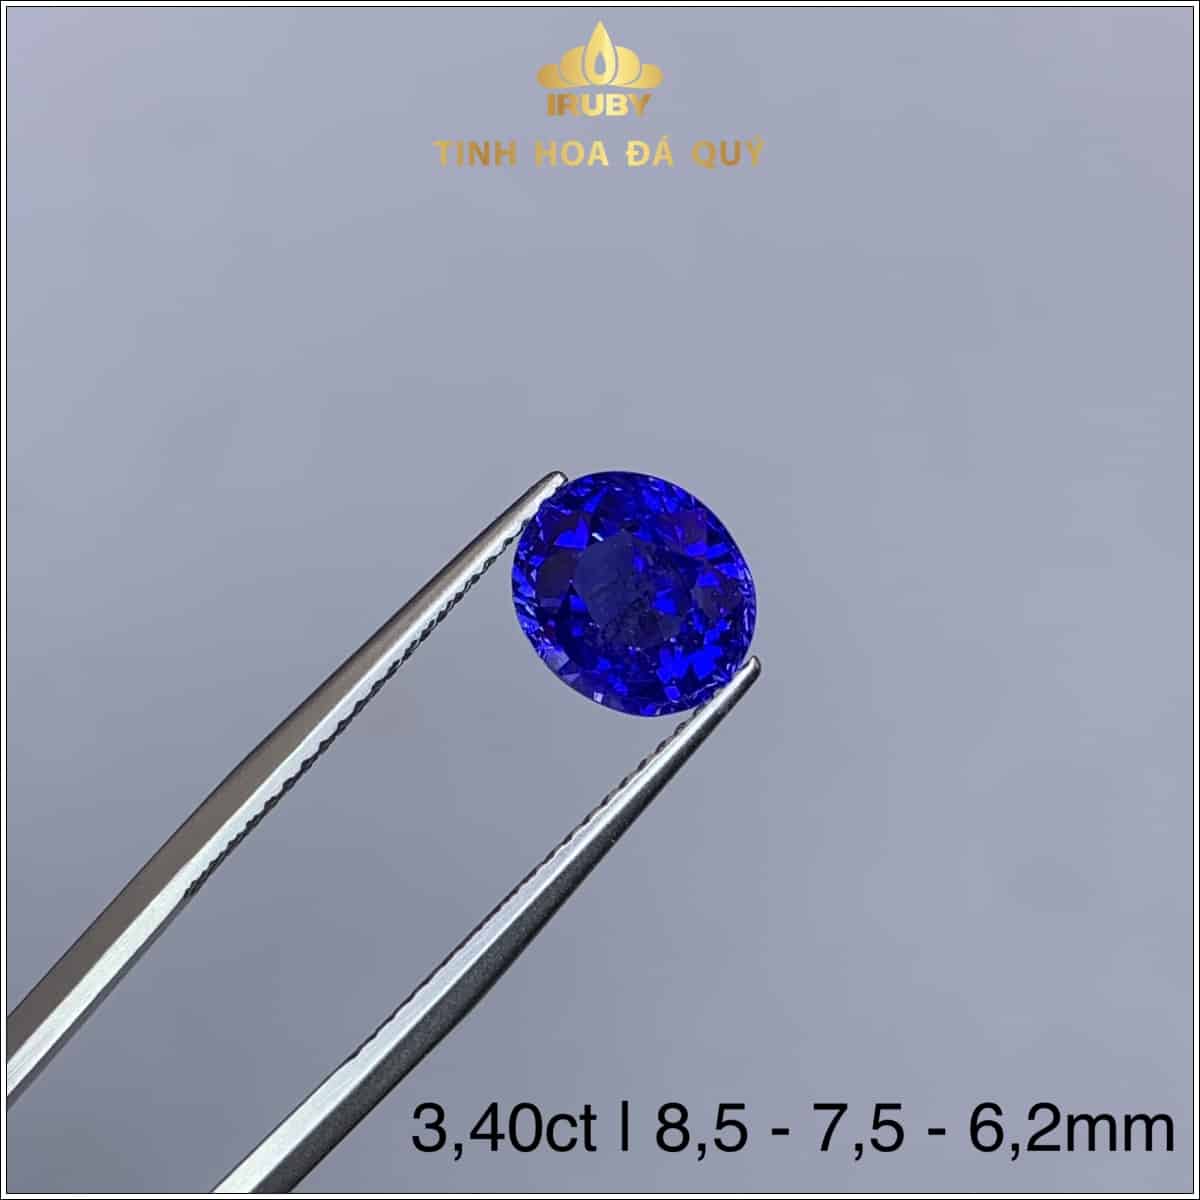 Viên Sapphire màu xanh lam hoàng gia 3,40ct - IRSP 235340 hình ảnh